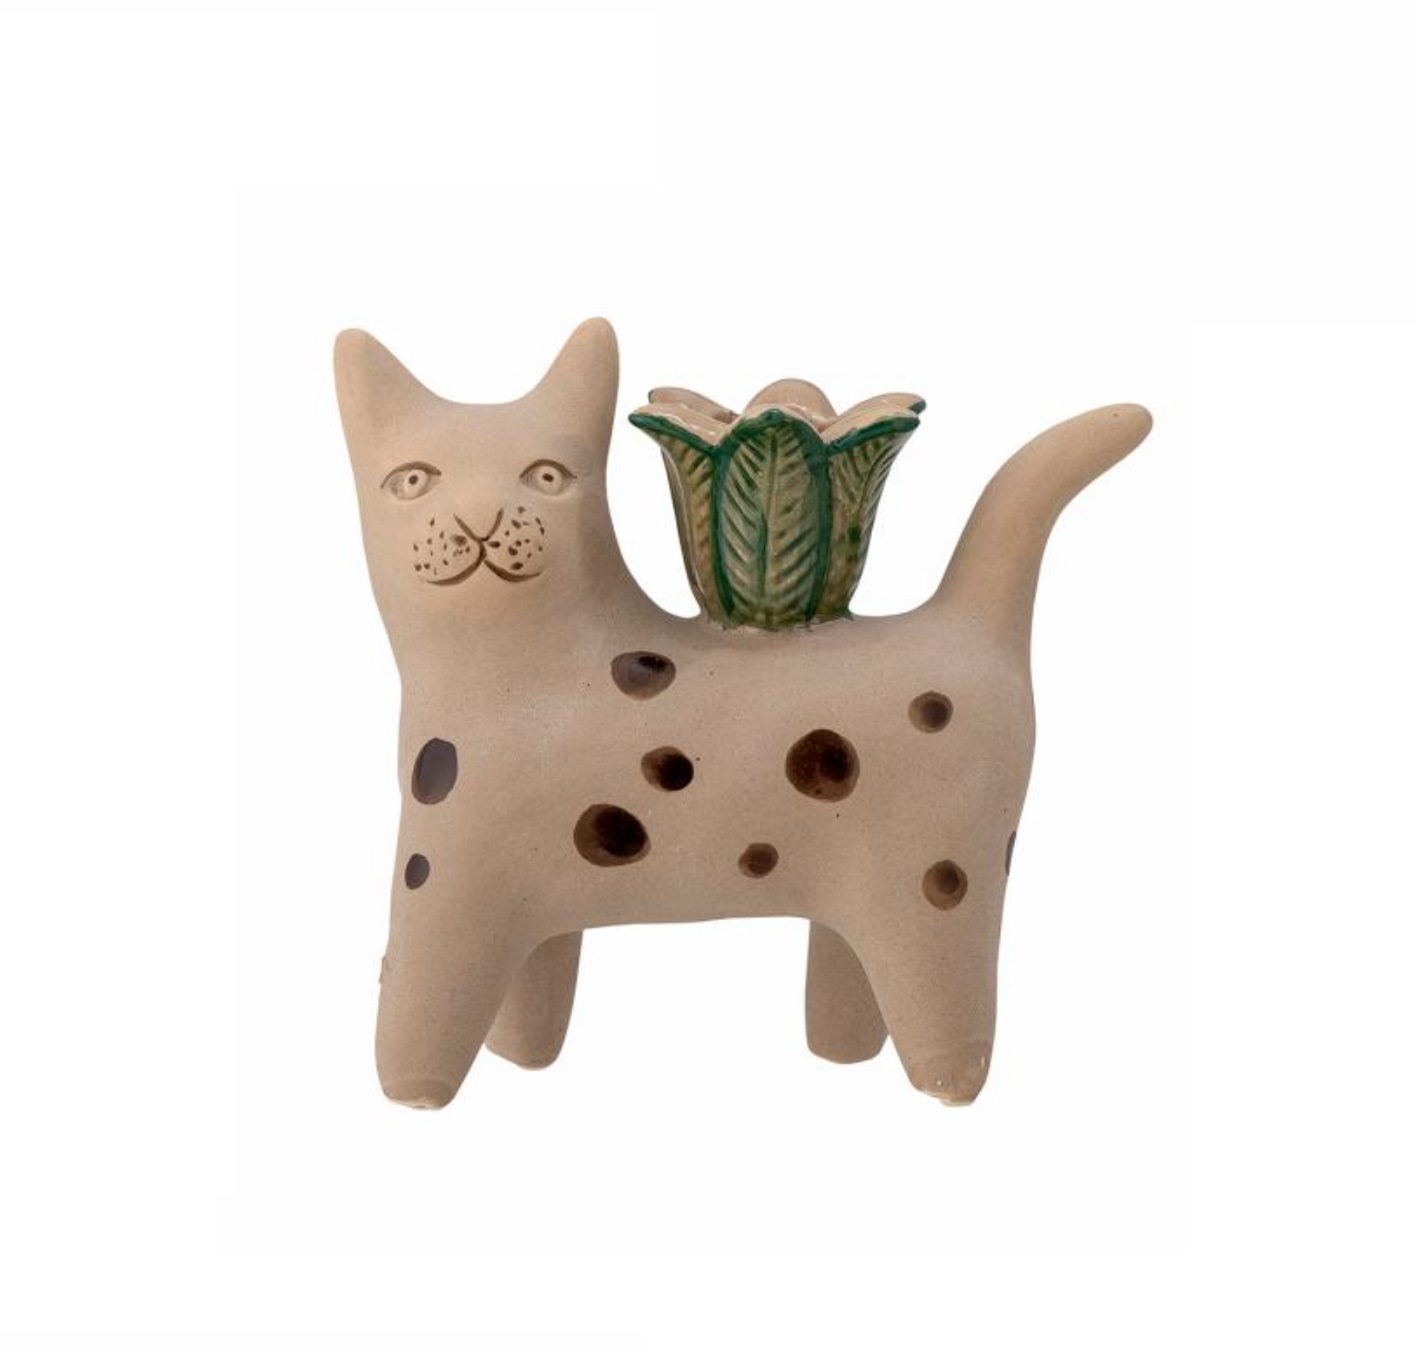  Kerzenhalter Katze stehend getupft, Keramik, Kerzenständer Mamie von Bloomingville, pro Stück